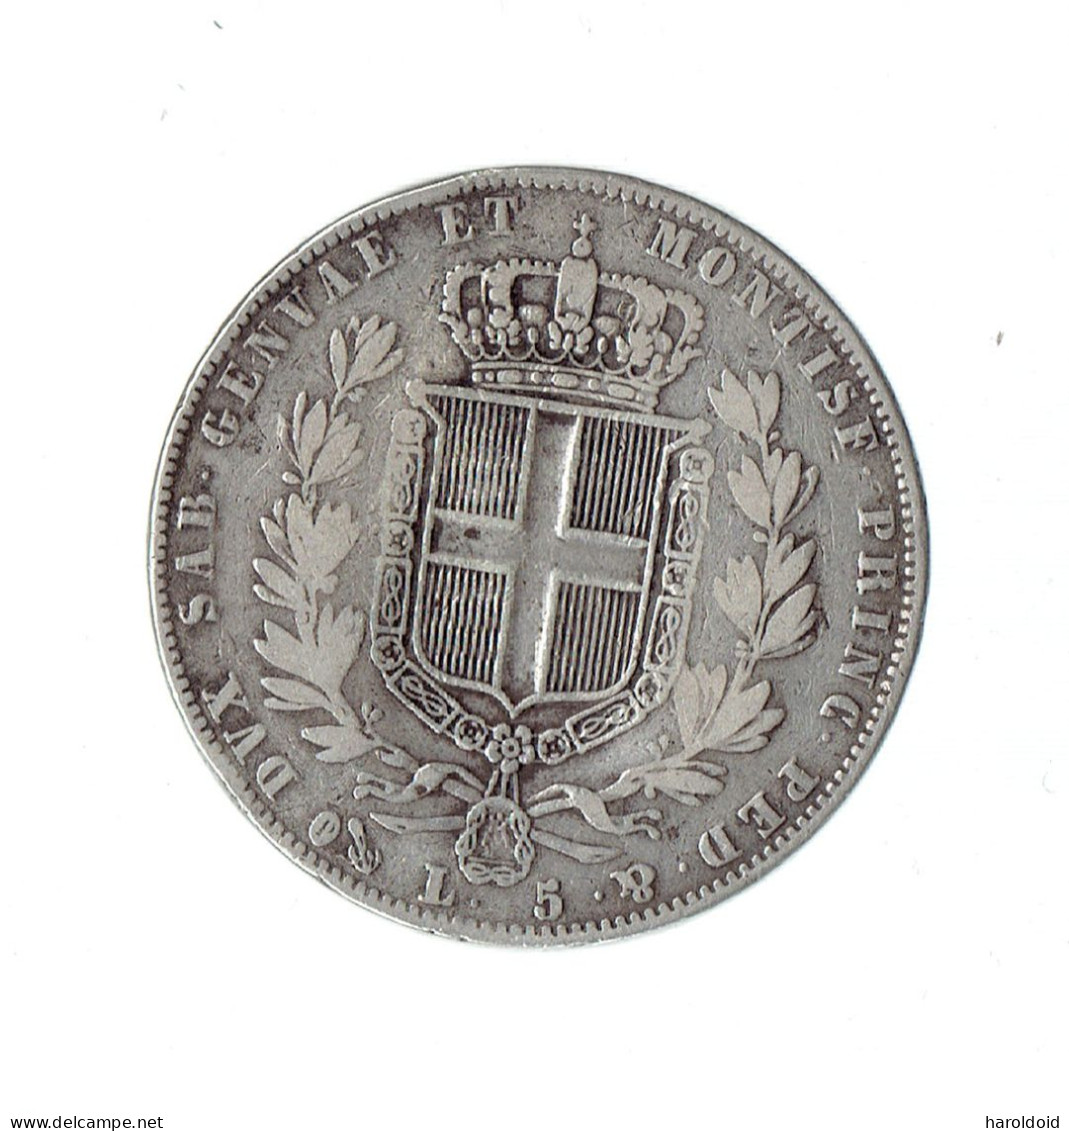 5 LIRE - 1844 P - Piemonte-Sardegna, Savoia Italiana